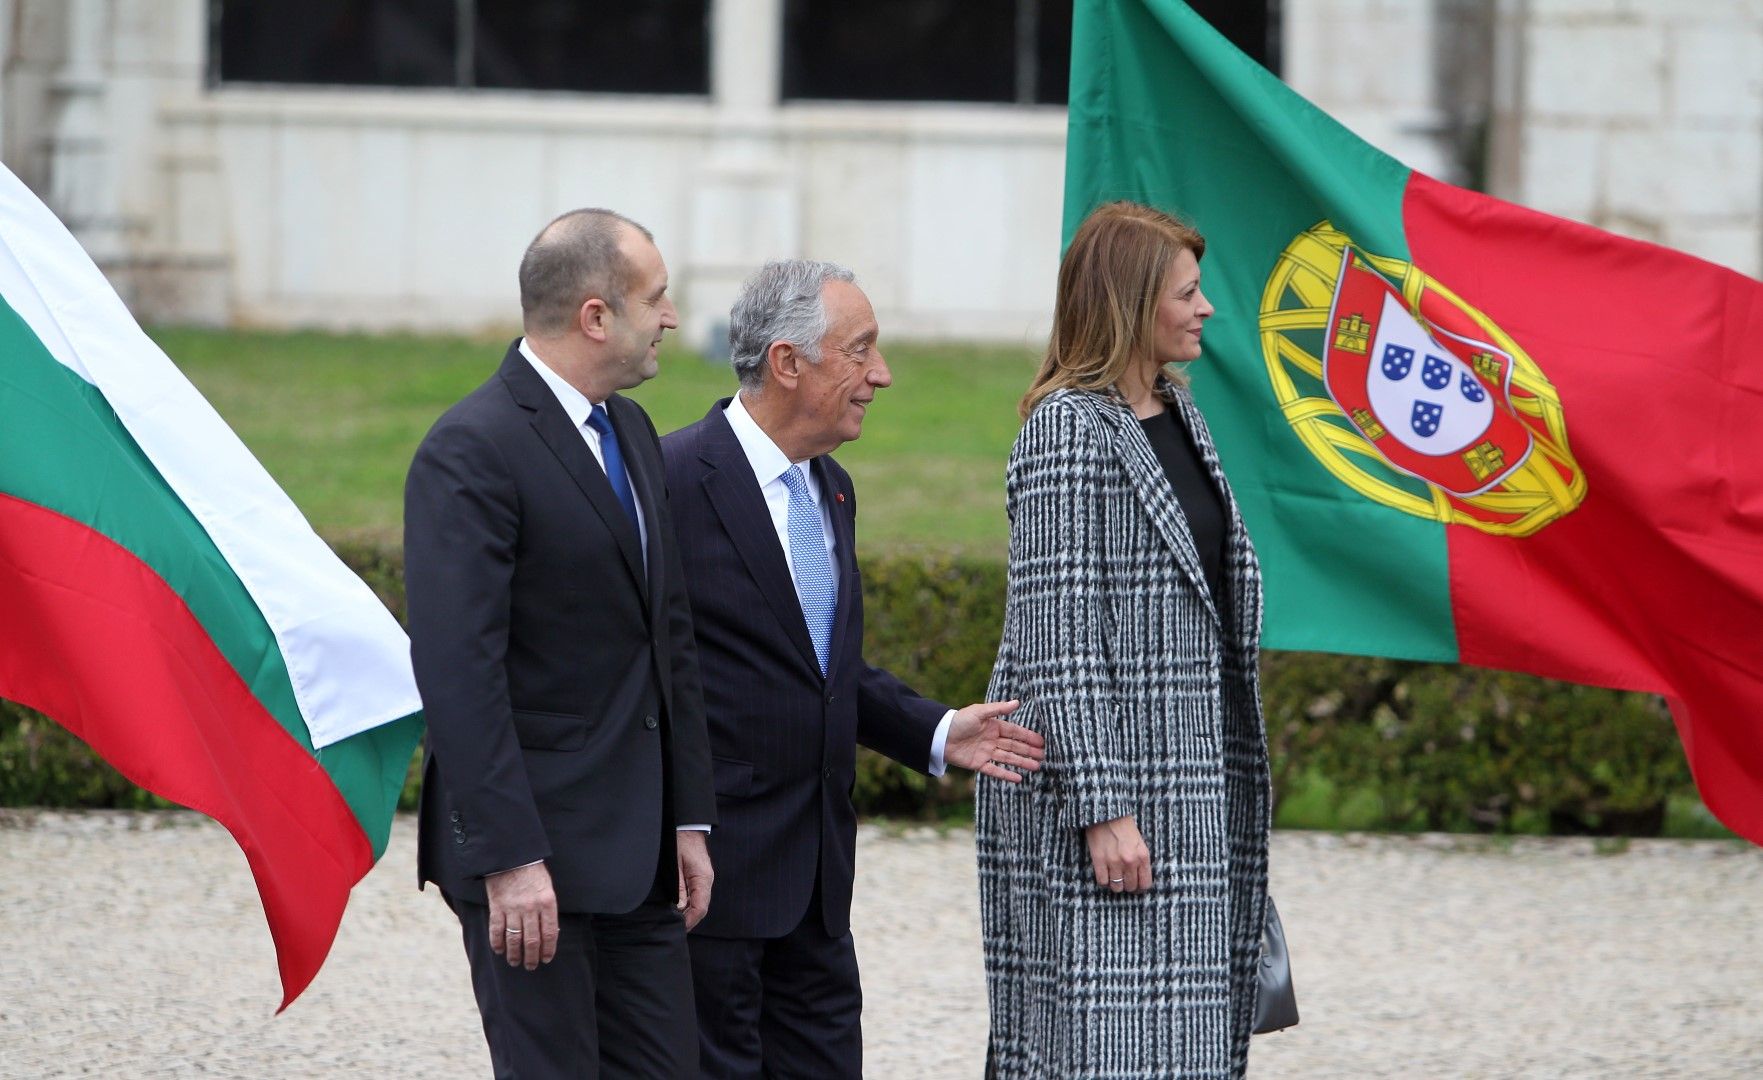 Румен и Десислава Радеви бяха посрещнати от президента Марселу Ребелу де Соуза